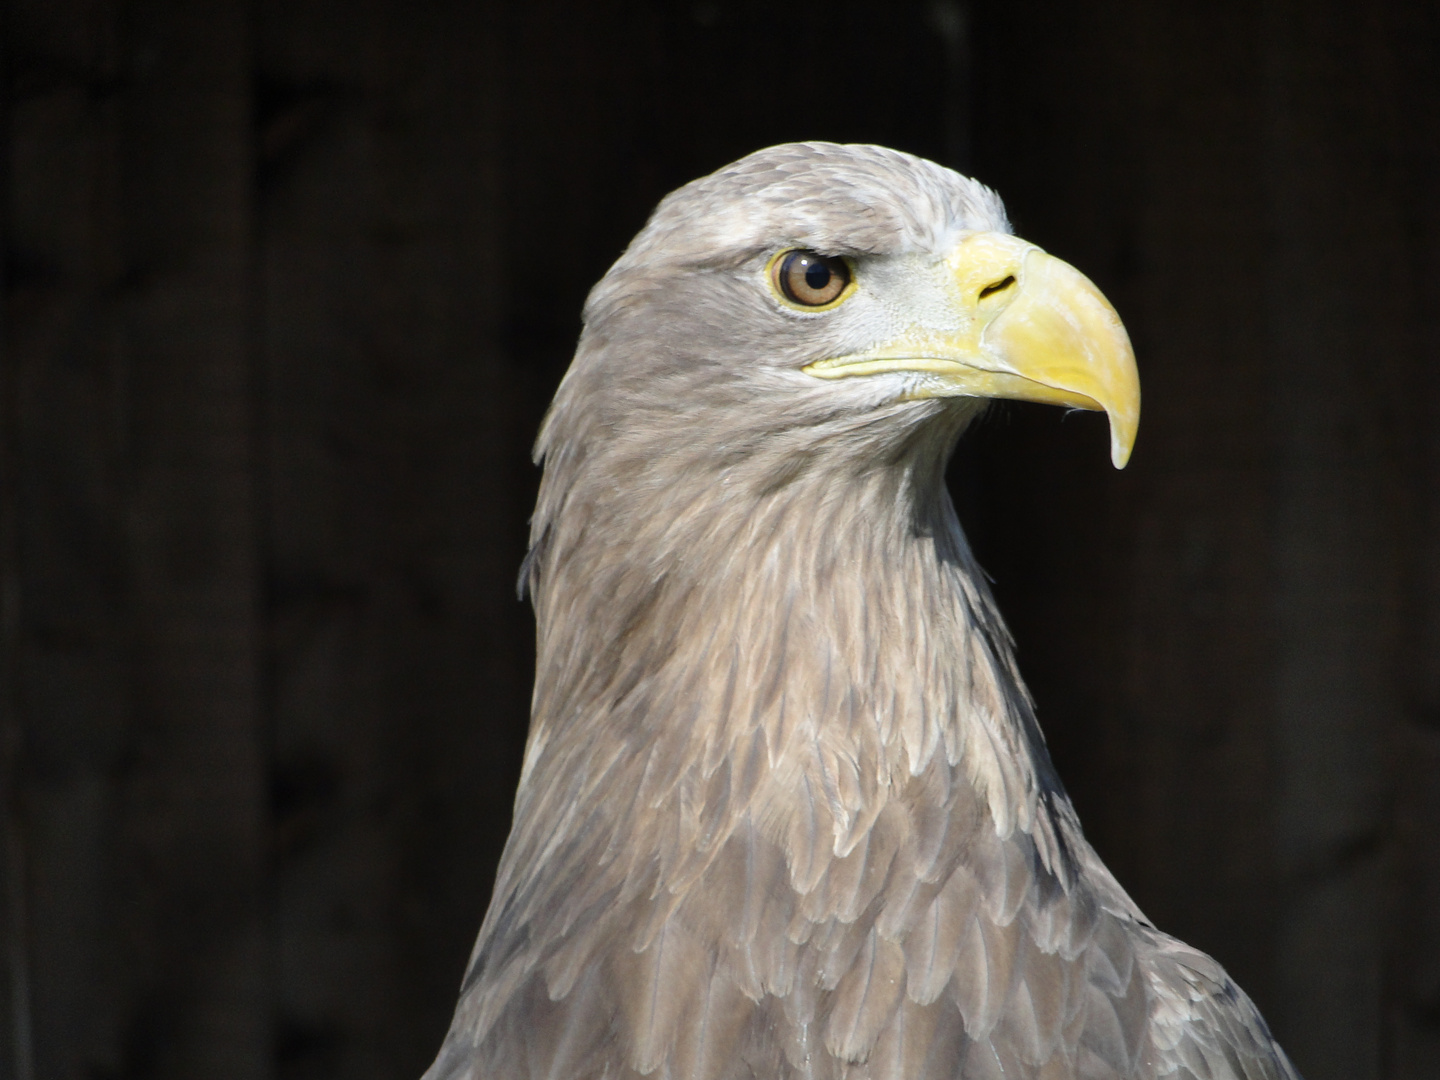 Tierpark Sababurg: Europäischer Seeadler - Portrait